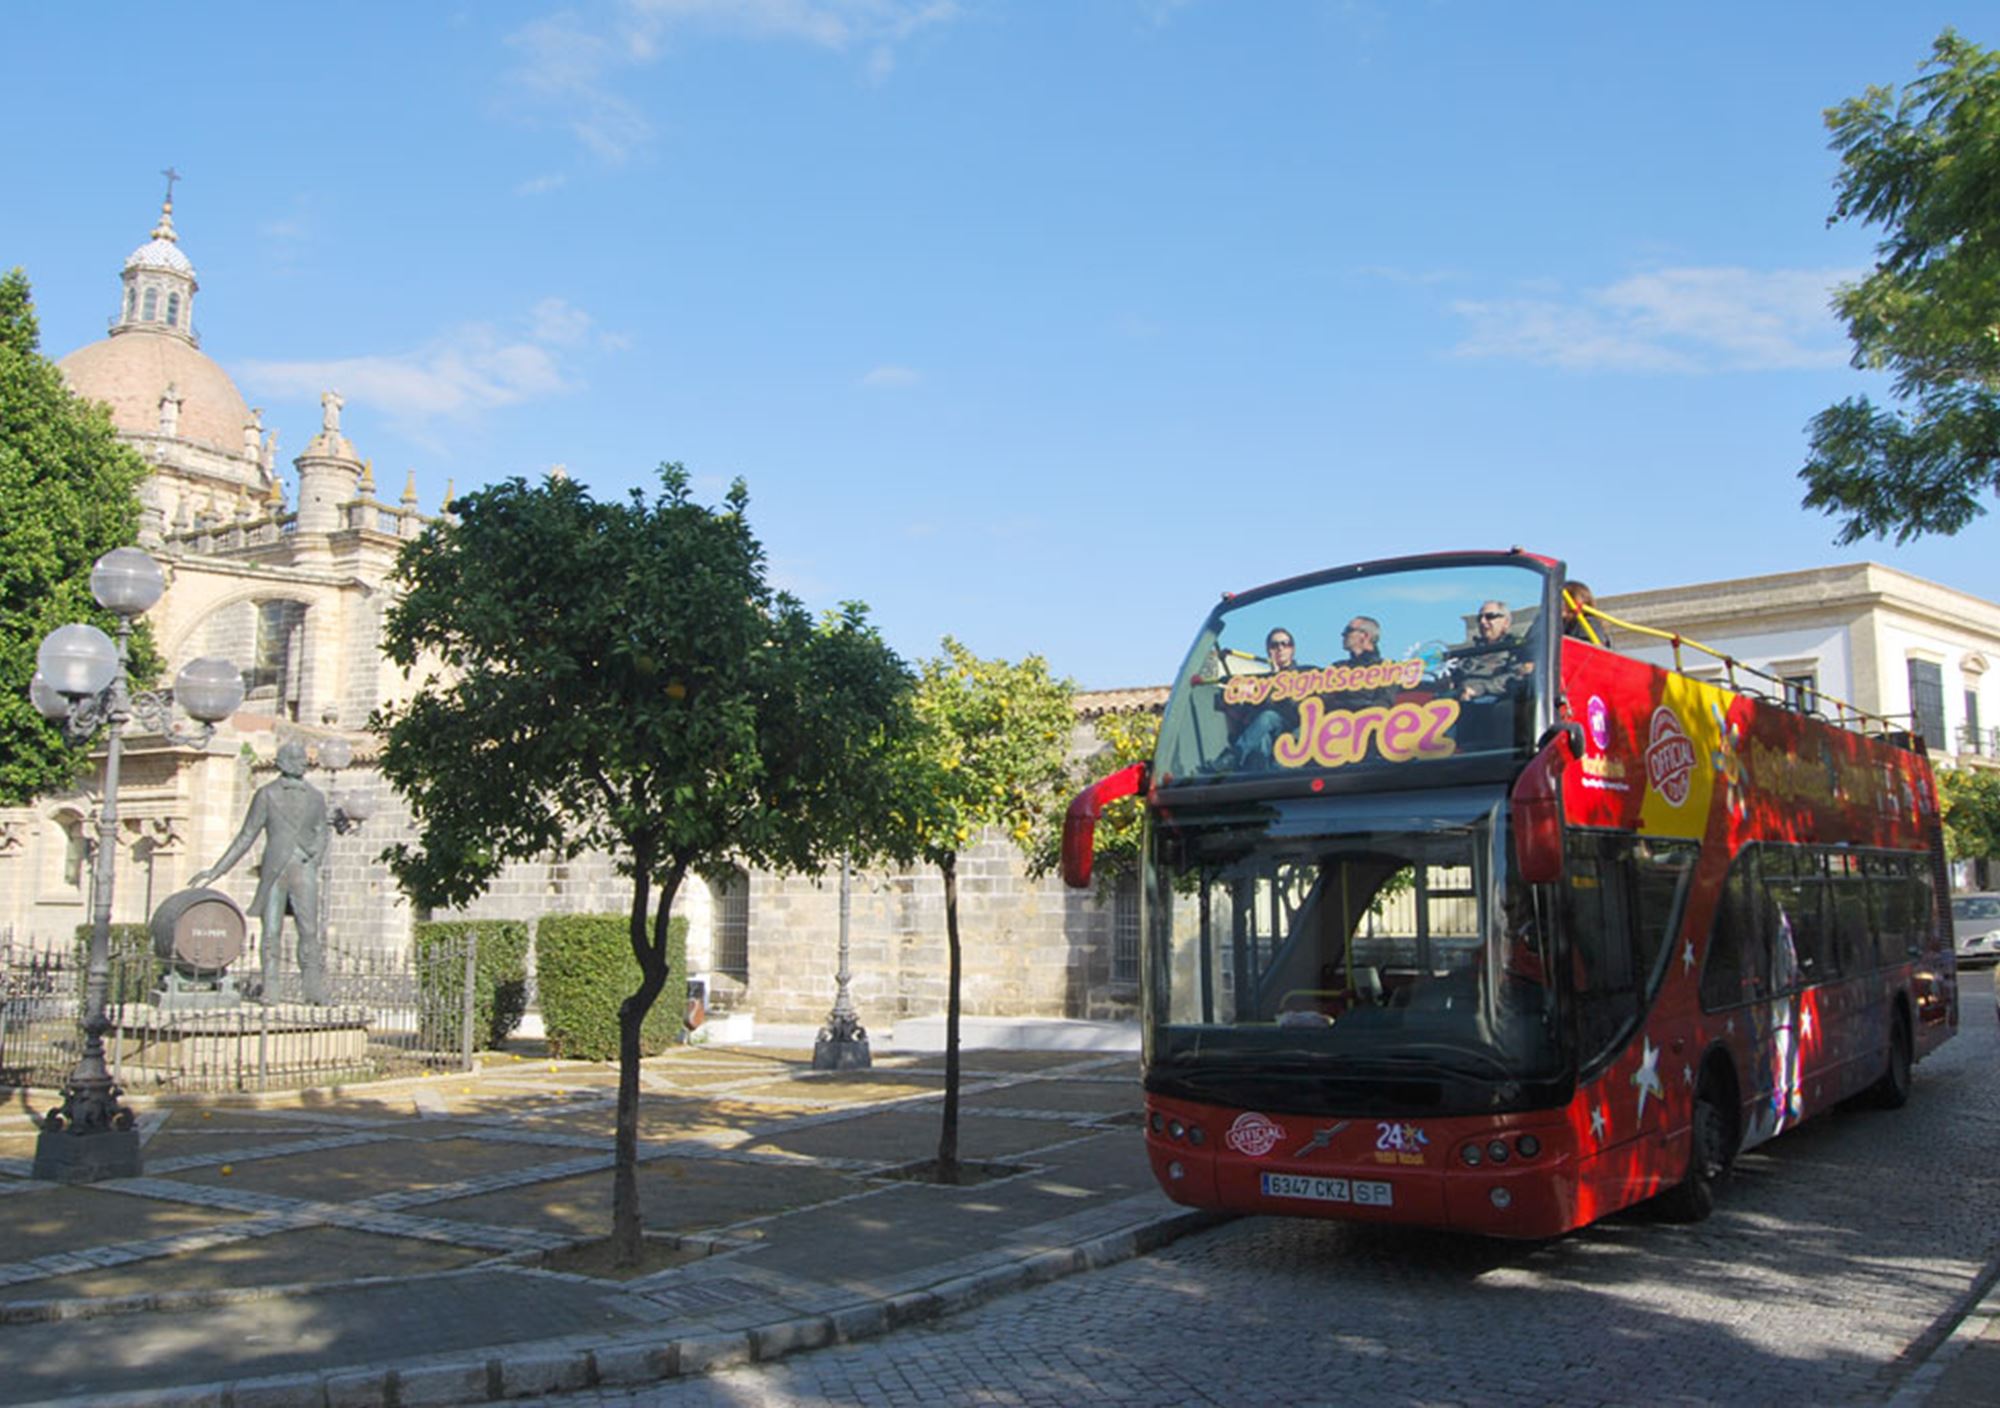 réservations réserver tours Bus Touristique City Sightseeing Jerez de la Frontera billets visiter